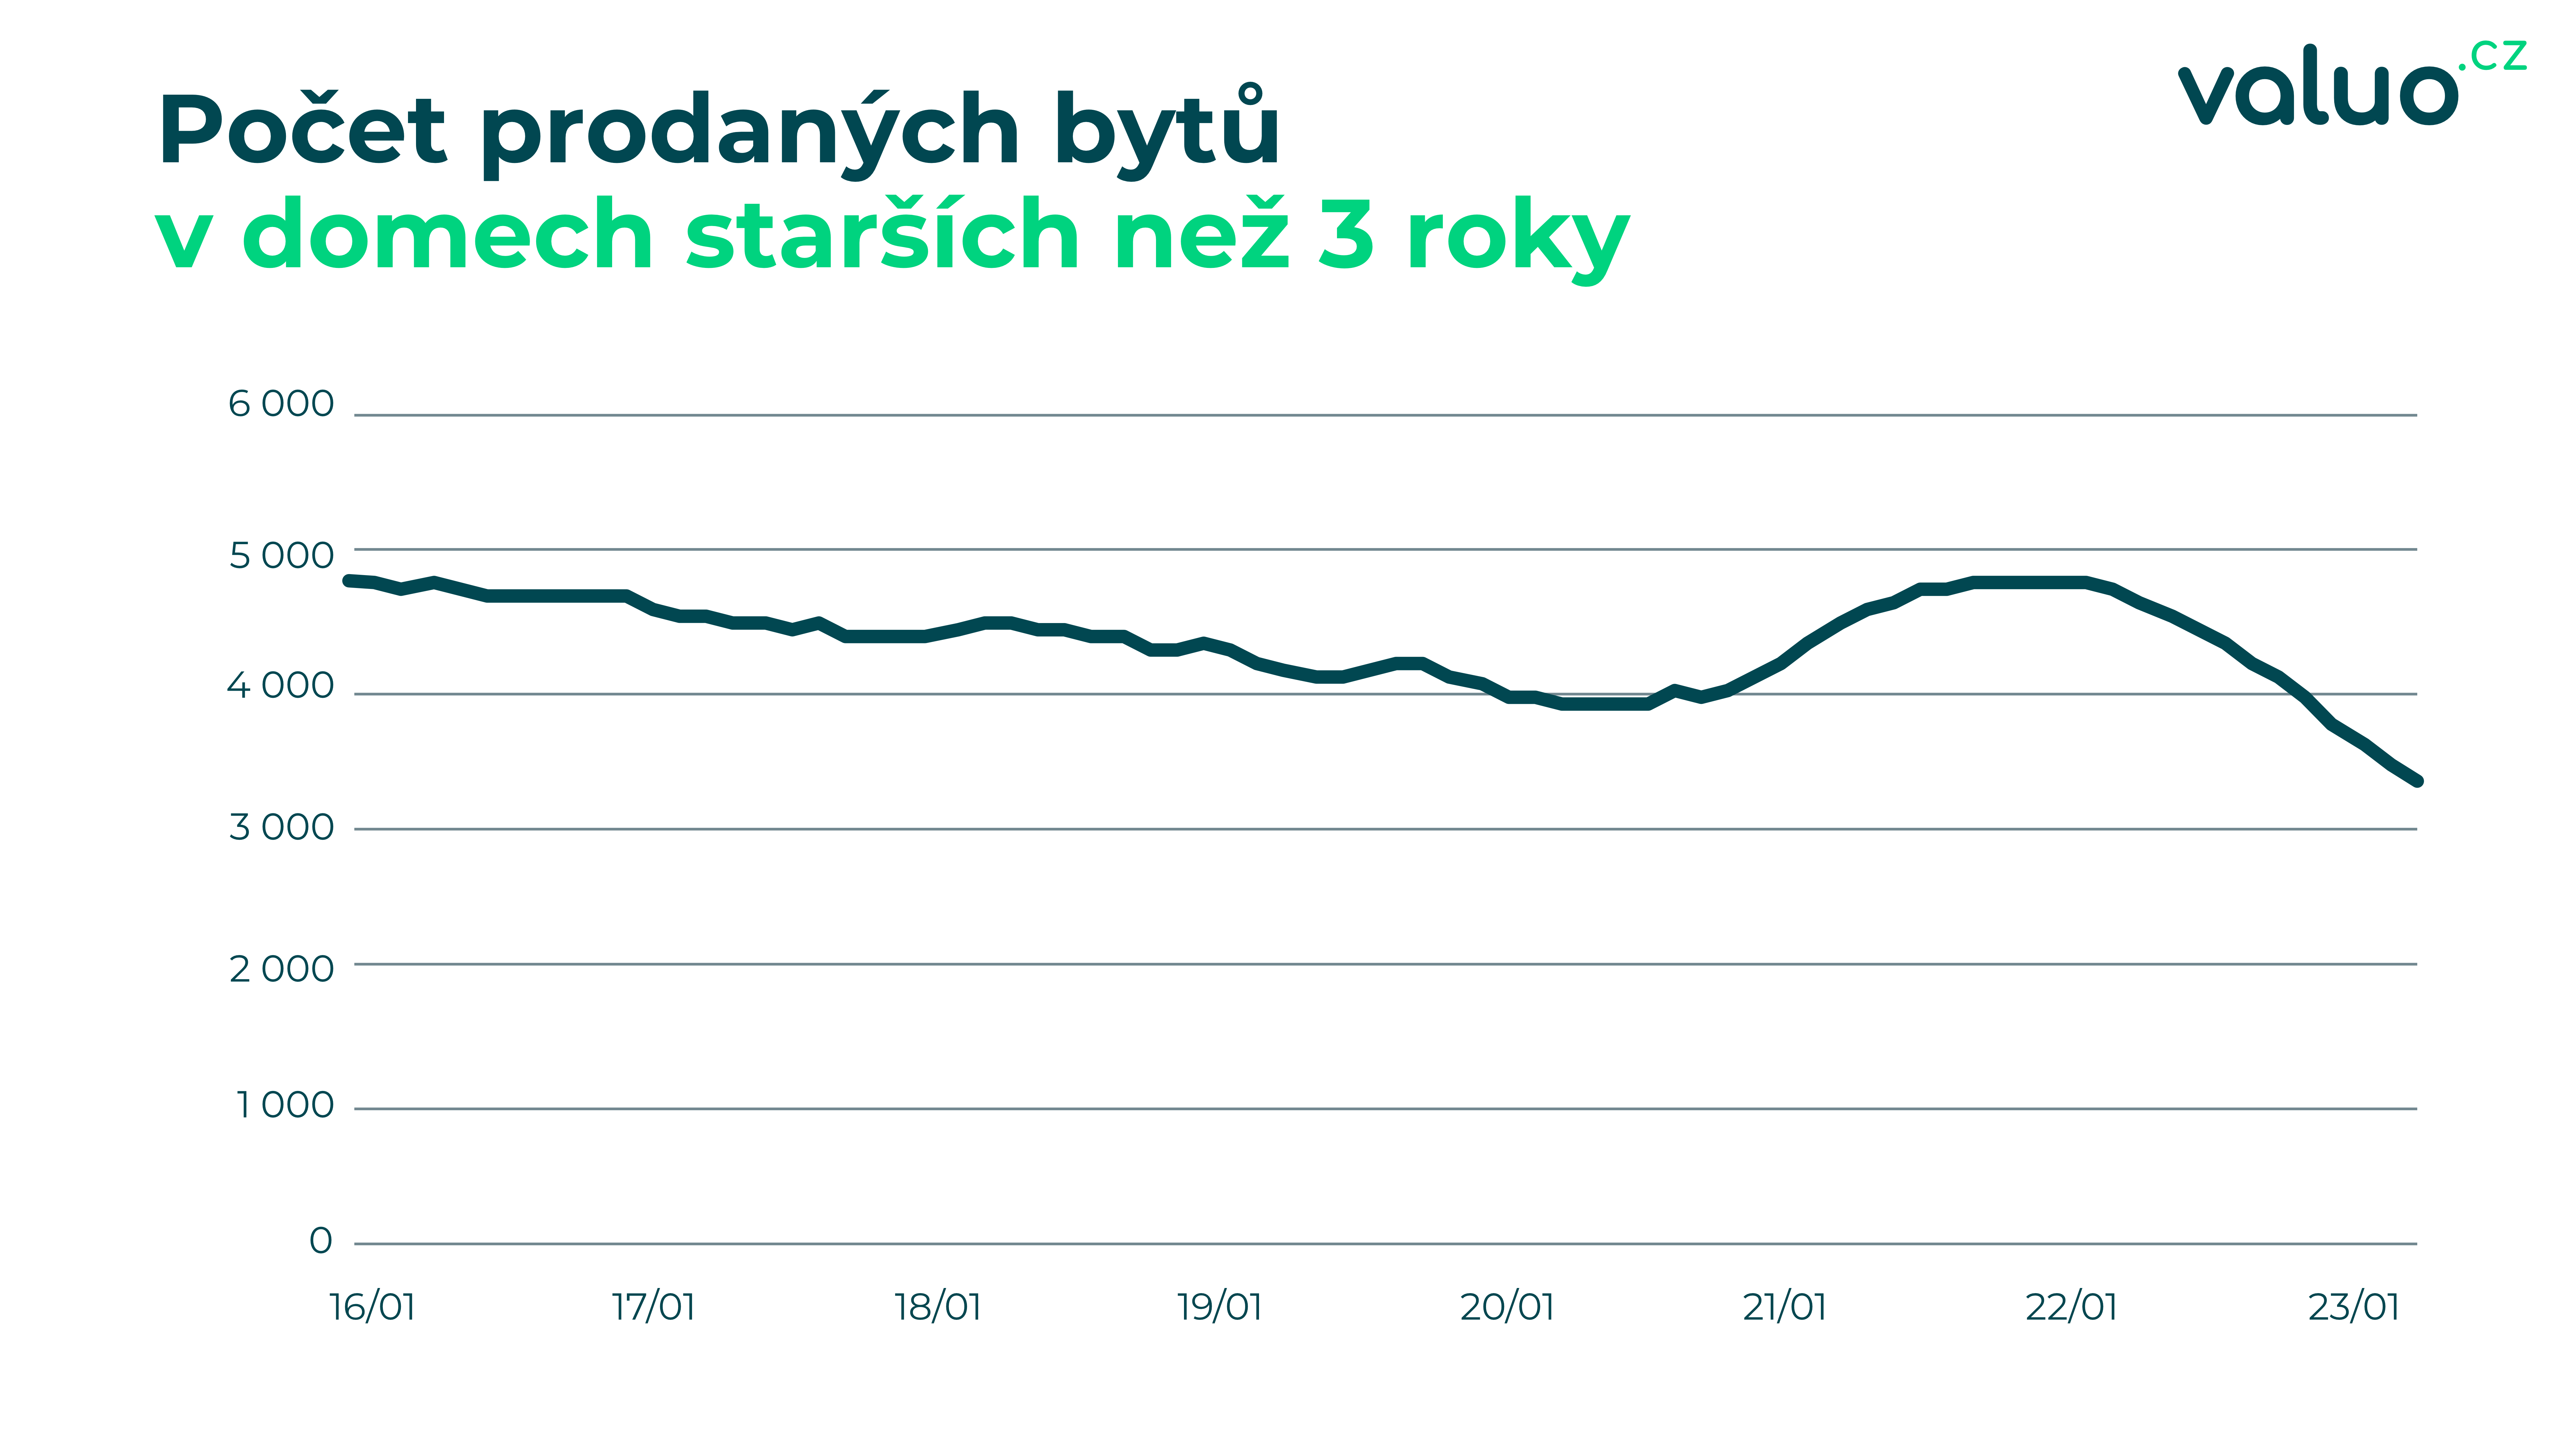 Počet prodaných bytů v domech starších než 3 roky, zdroj: Valuo.cz